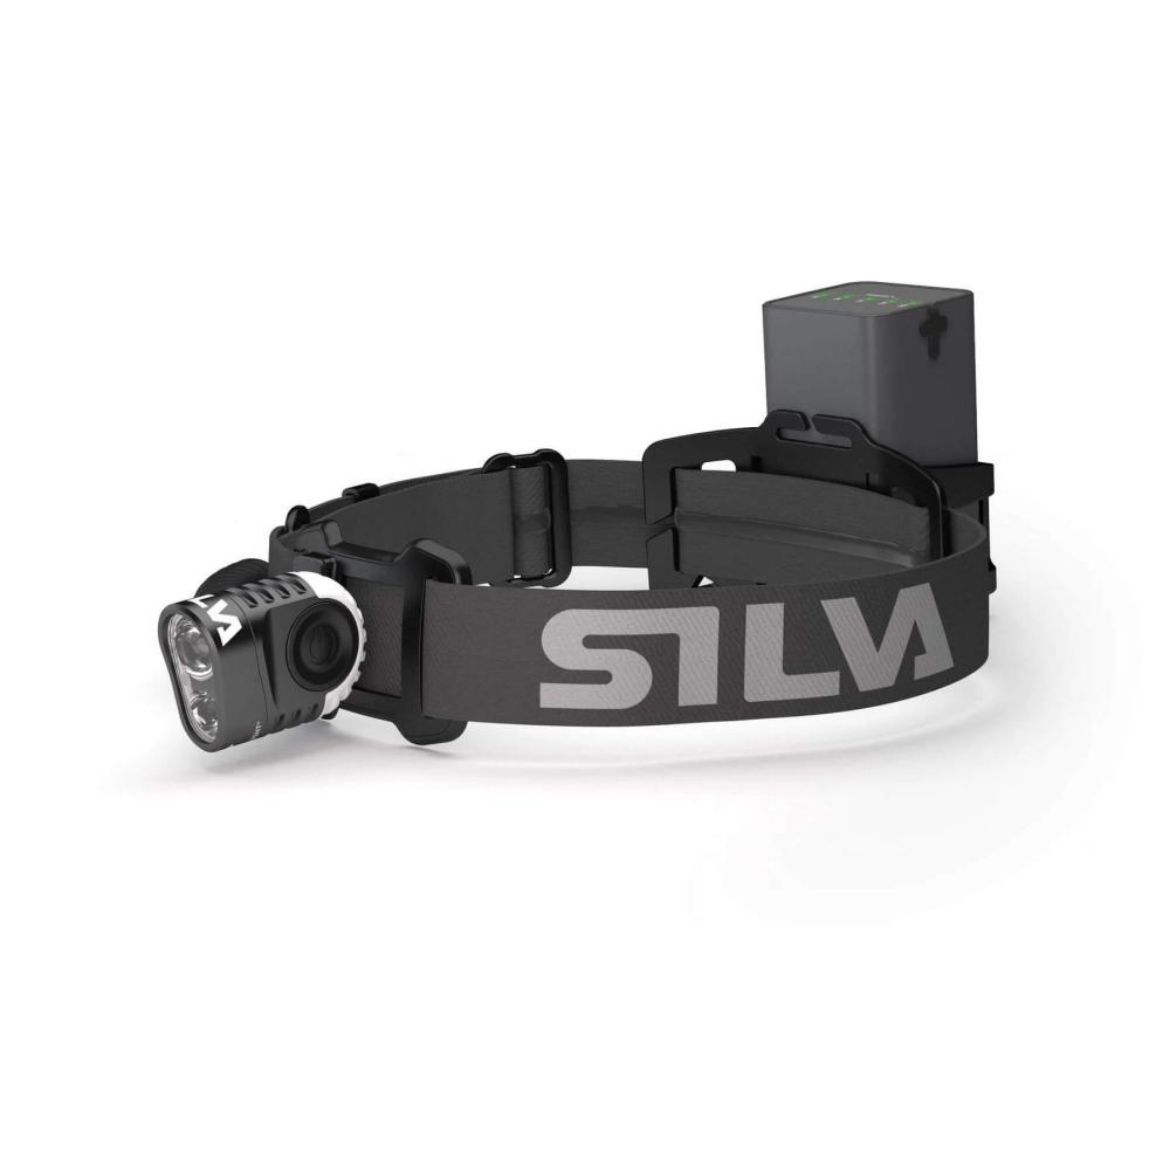 Silva Trail Speed 5XT Kafa Lambası resmi